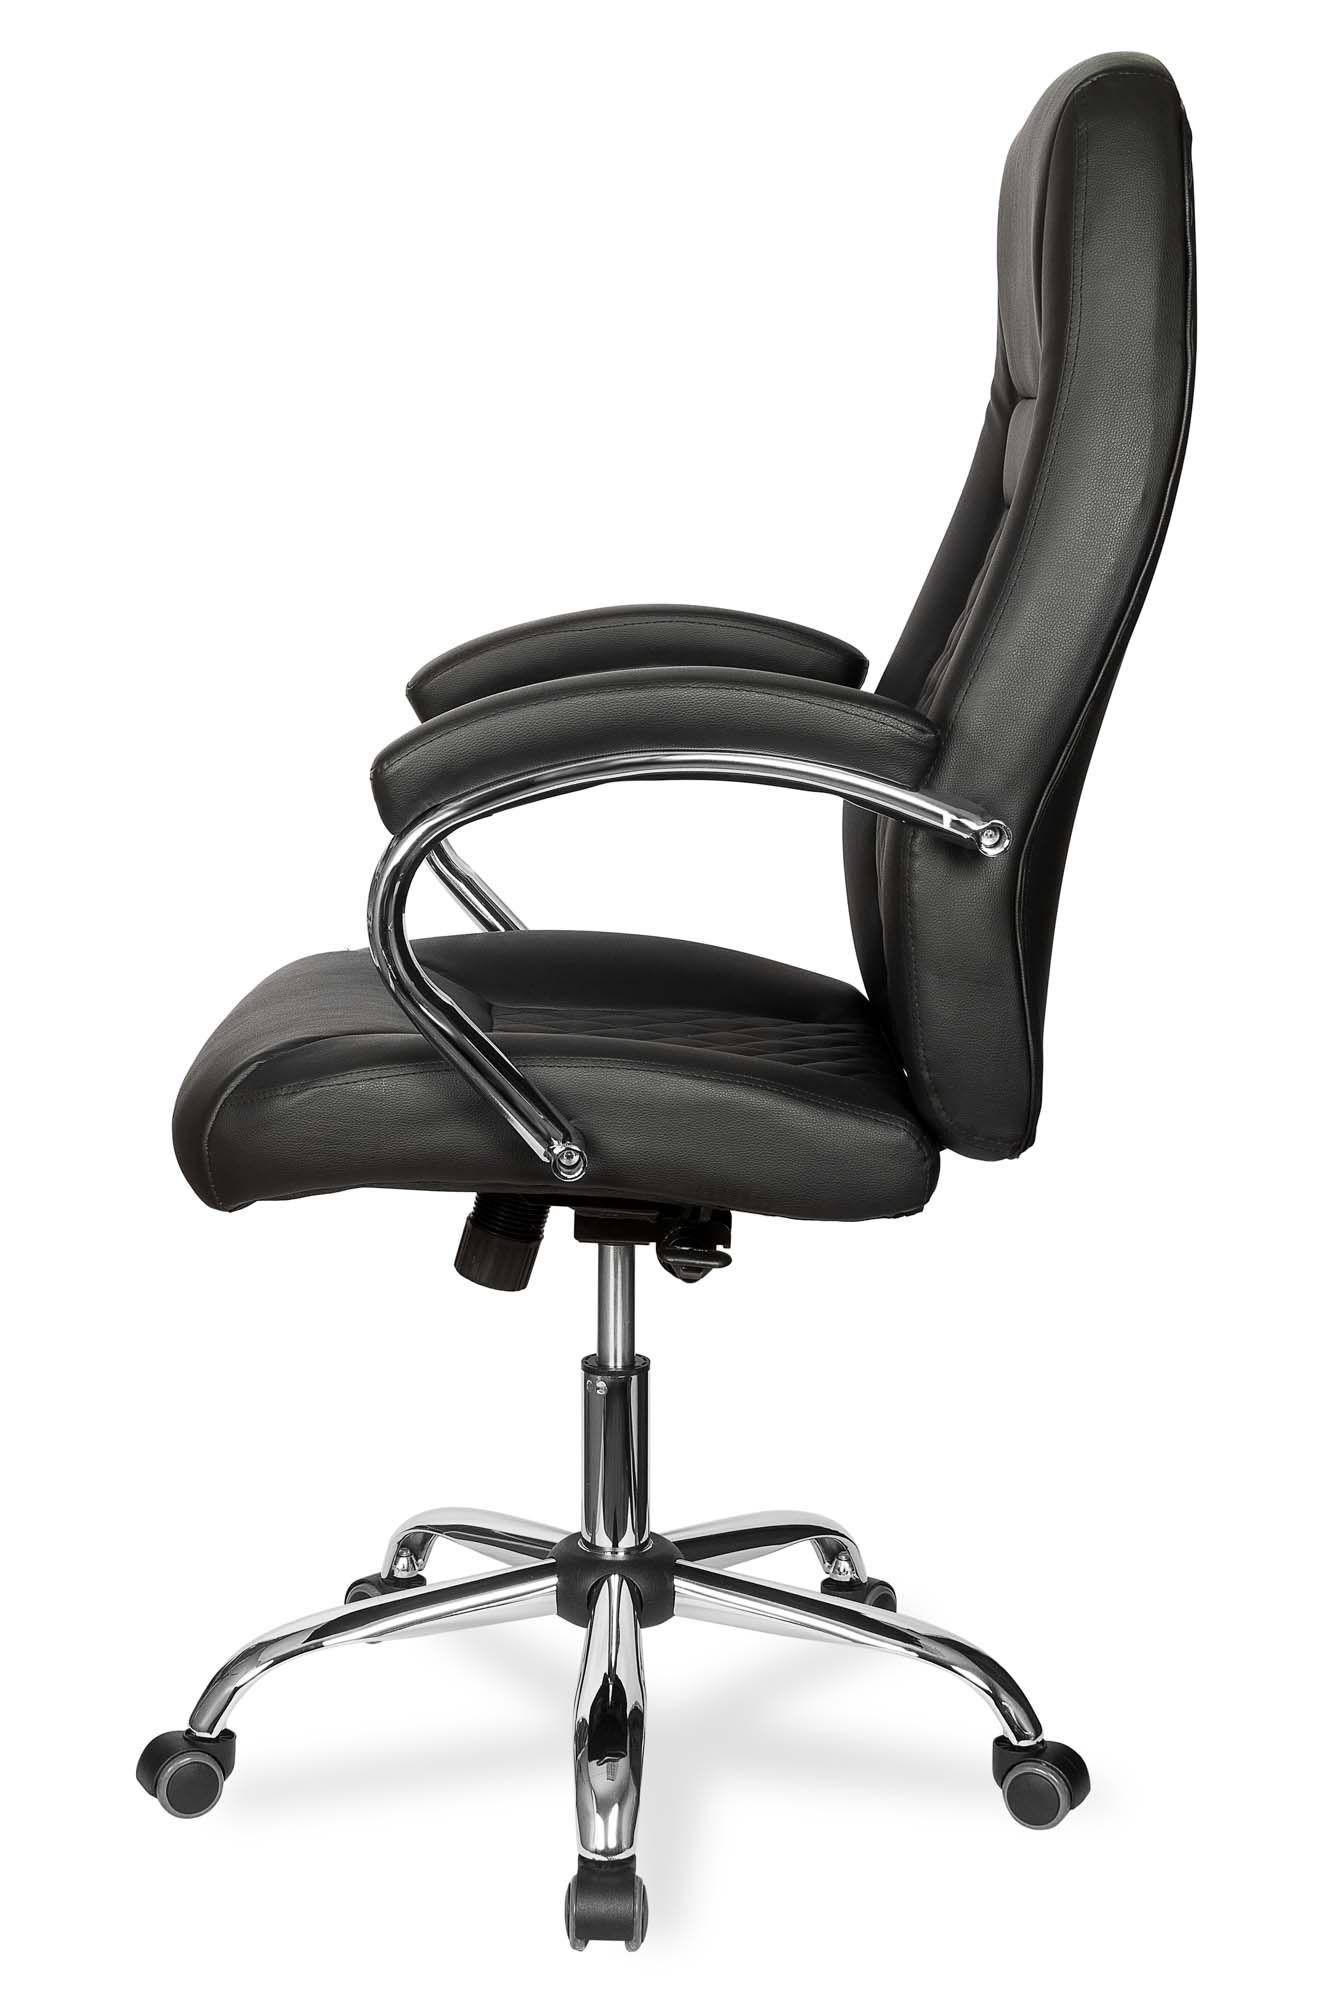 Кресло для руководителя College CLG-624 LXH Черный